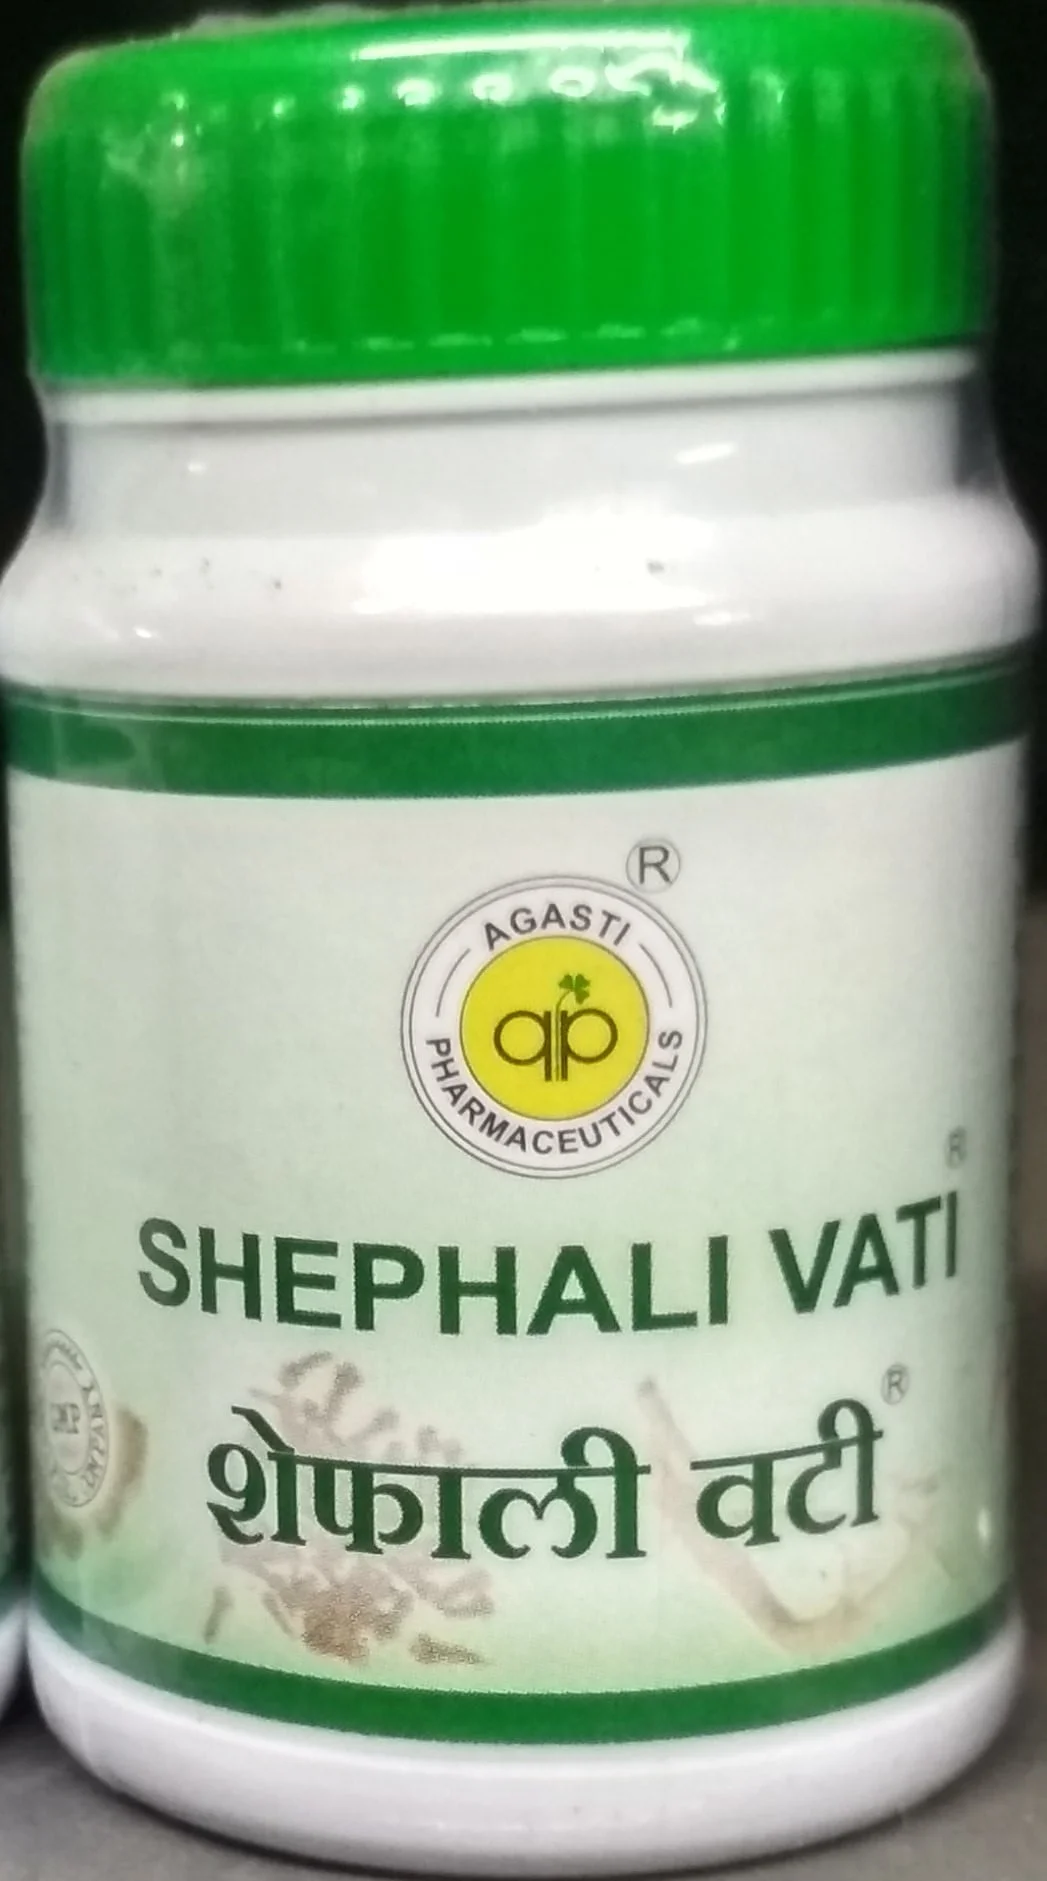 shephali vati 1 kg 2000 tablet upto 15% off agasti pharmaceuticals